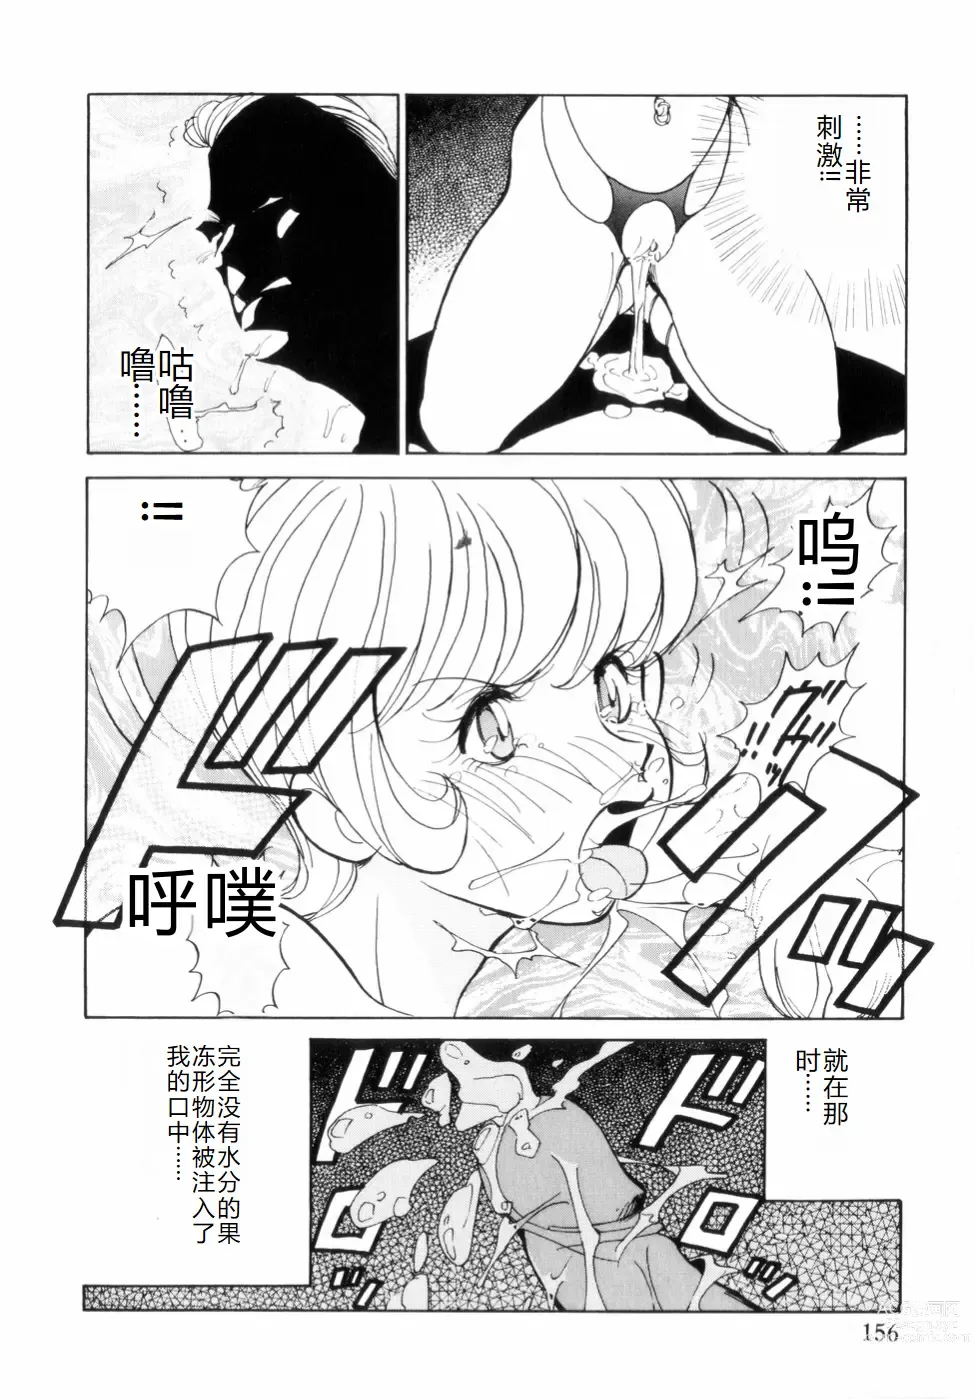 Page 160 of manga Hakujuu no Hasha